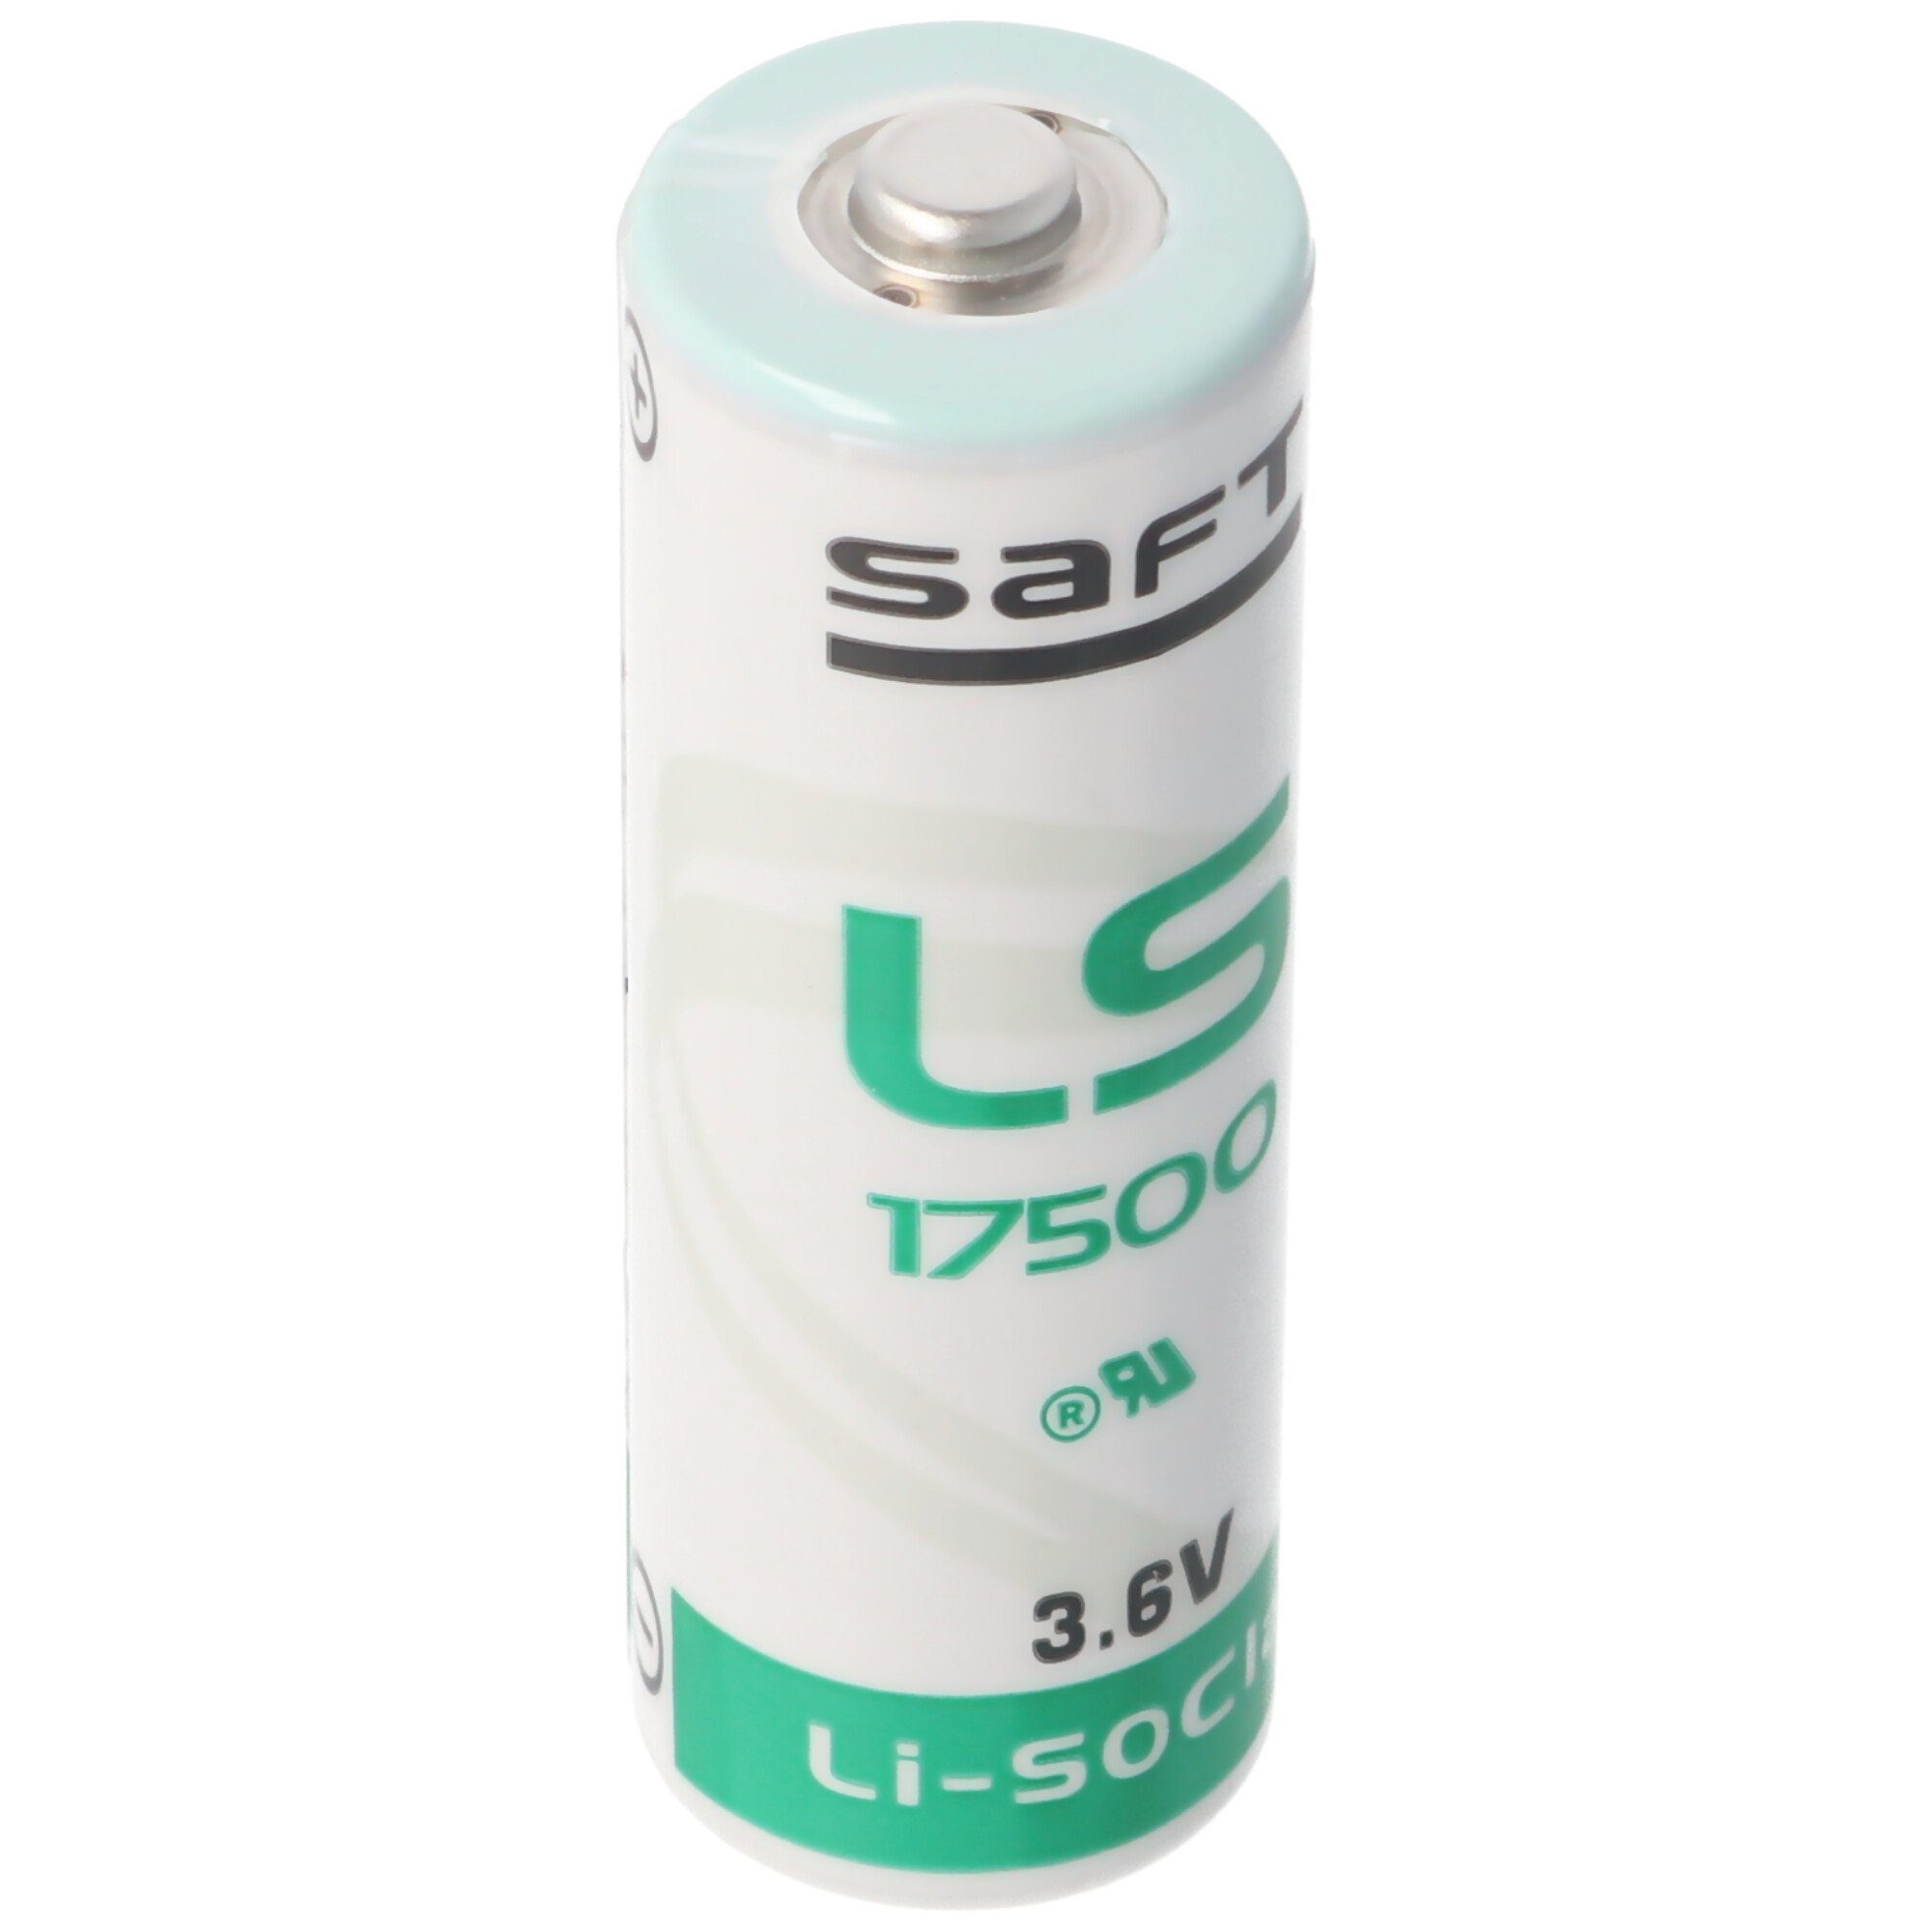 Saft SAFT LS17500 Lithium Batterie, ohne Batterie, Lötfahne (3,6 V) A, Size